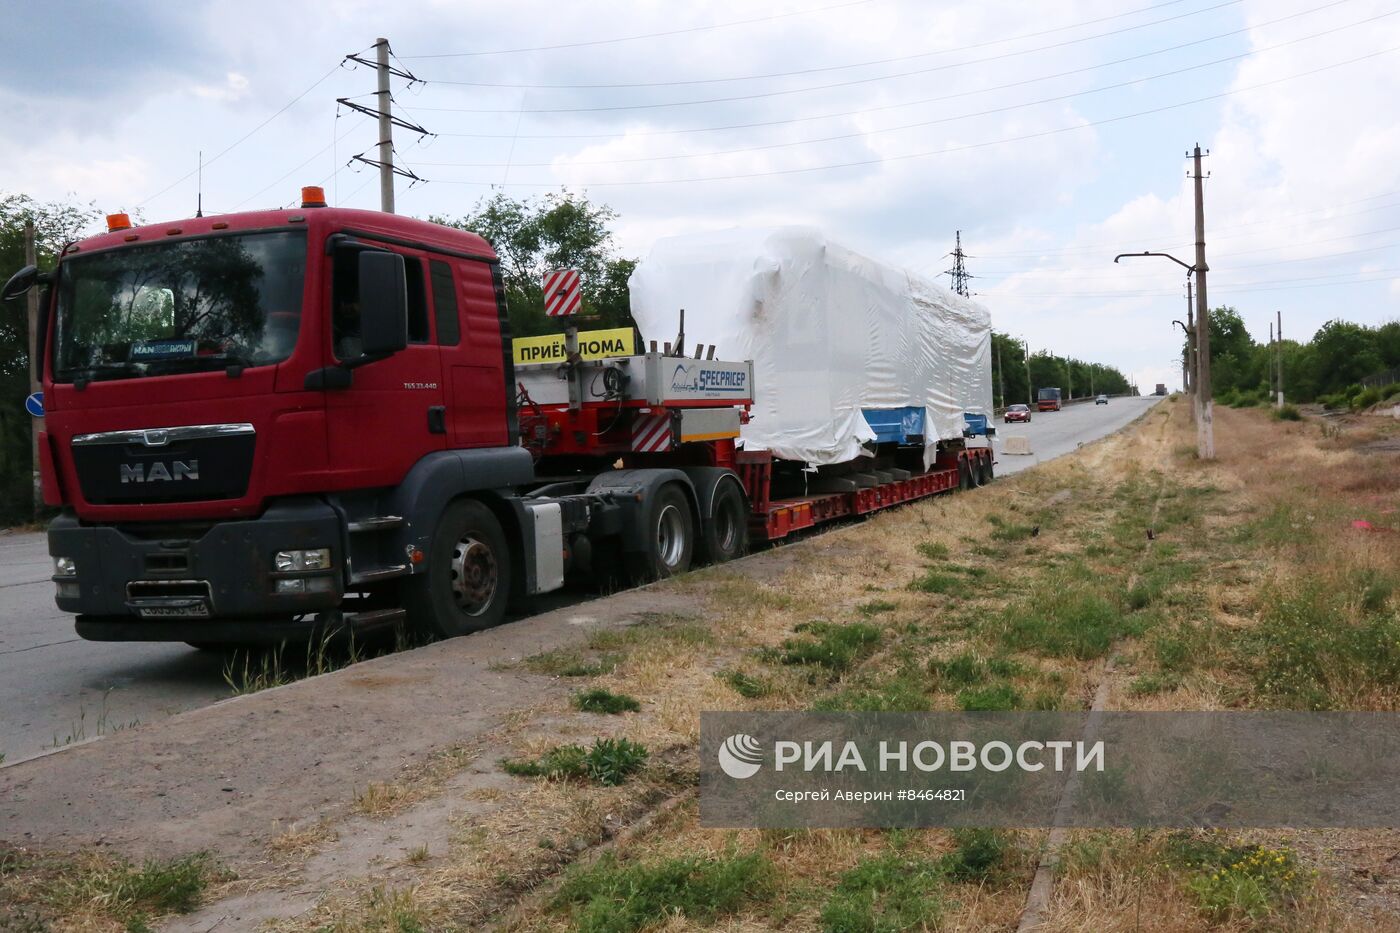 Модернизированный трамвайный вагон из Нижнего Новгорода прибыл в Мариуполь